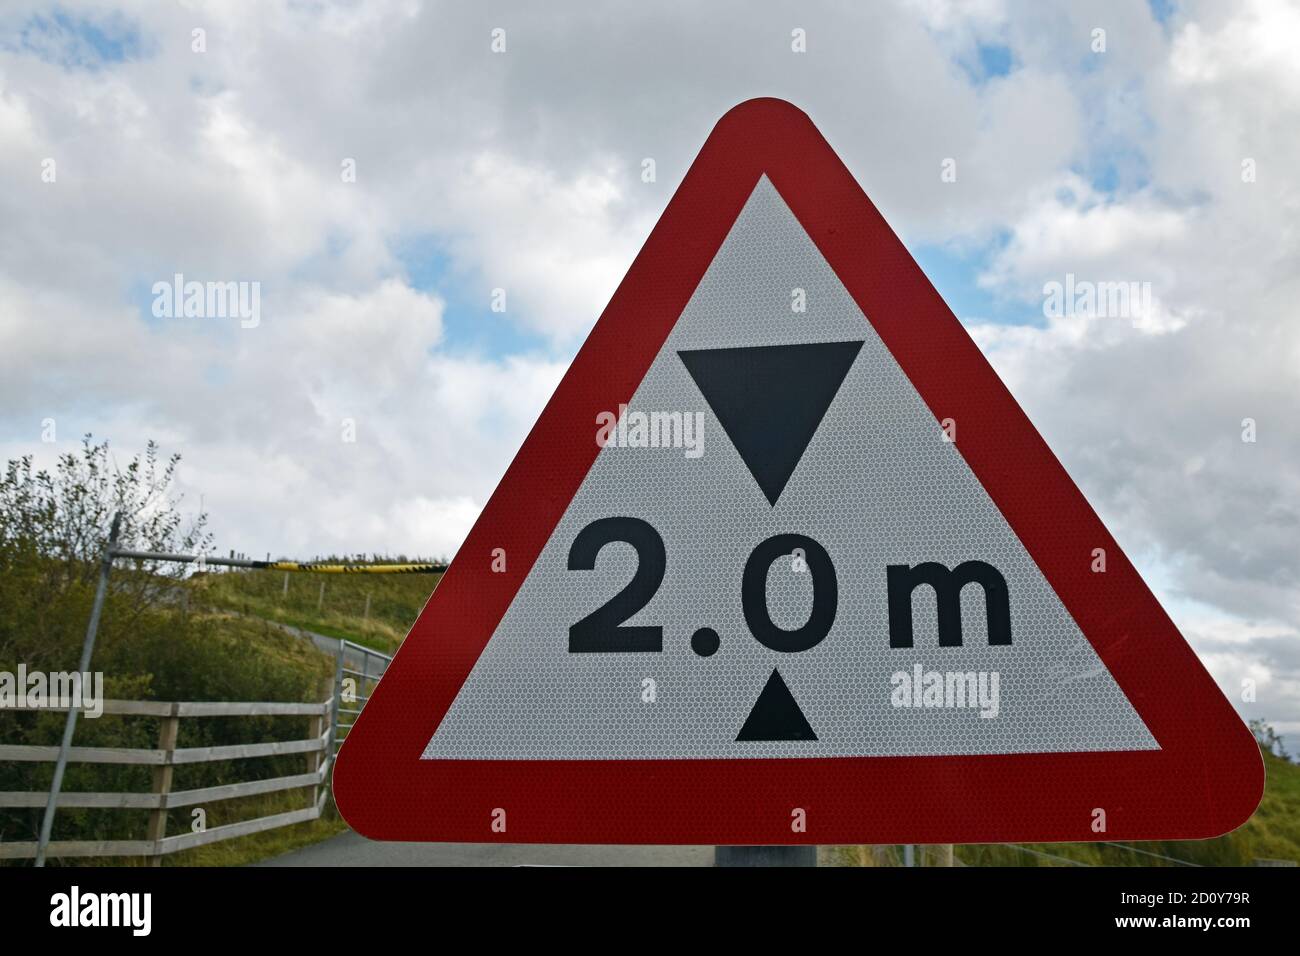 Panneau de restriction de hauteur de deux mètres dans un triangle d'avertissement rouge avec barrière floue en arrière-plan. Île de Skye, Écosse, Royaume-Uni. Banque D'Images